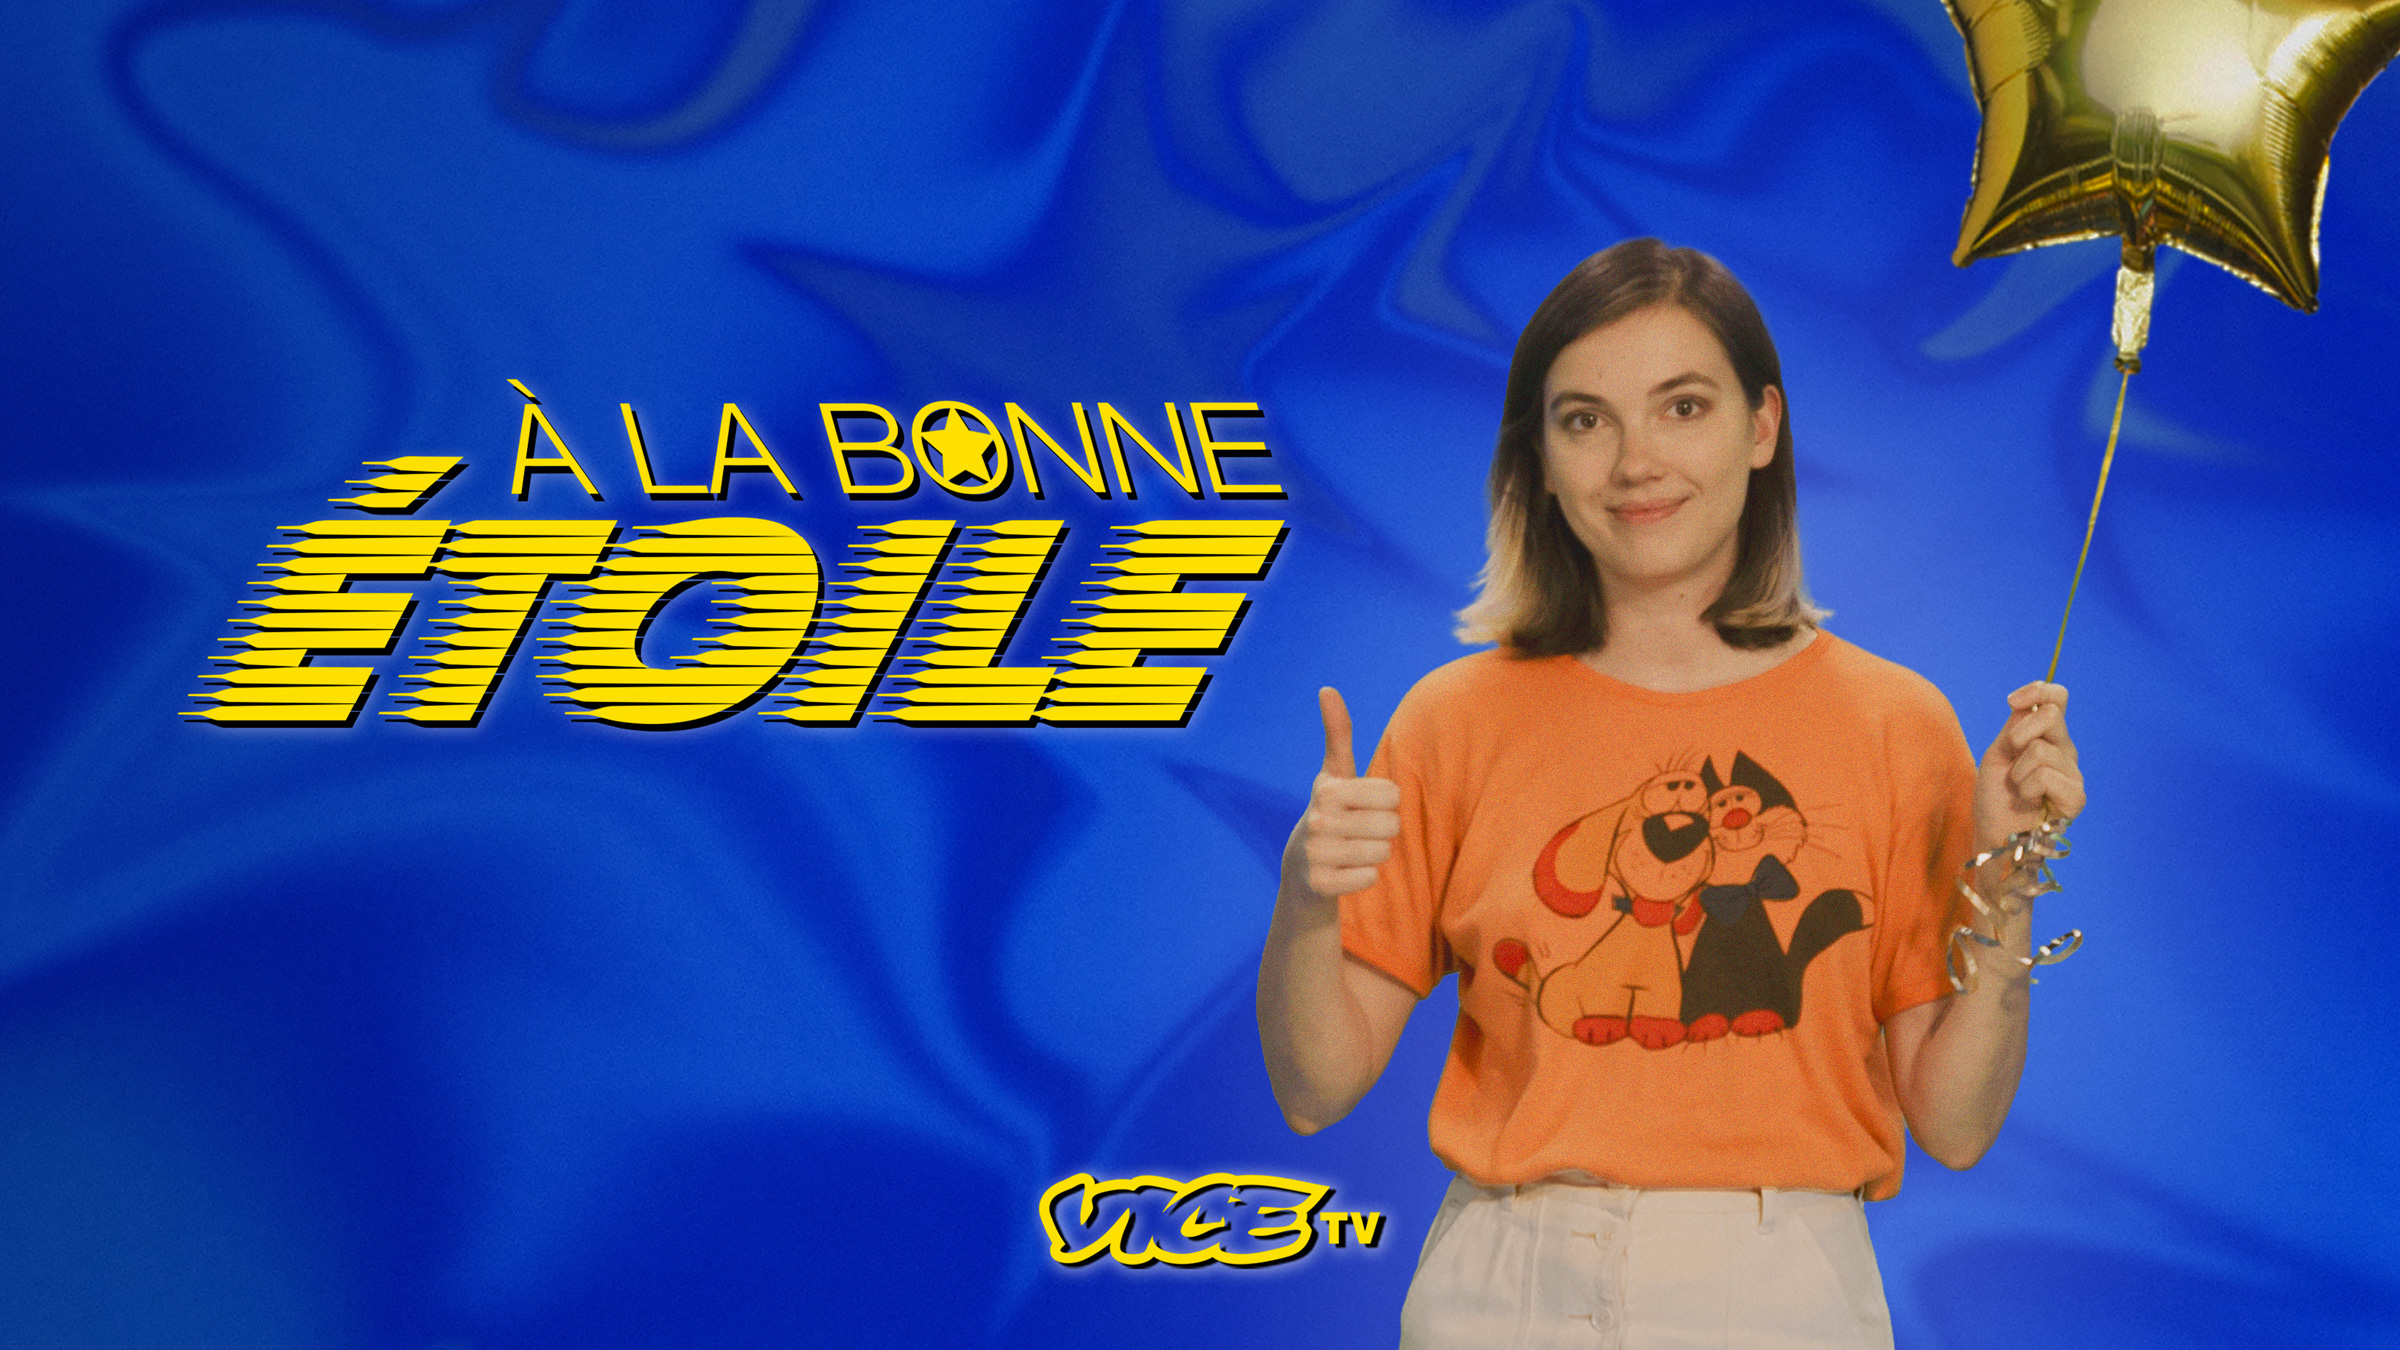 VICE TV lance "A la bonne étoile" une nouvelle émission hors-norme à découvrir dès le 29 octobre